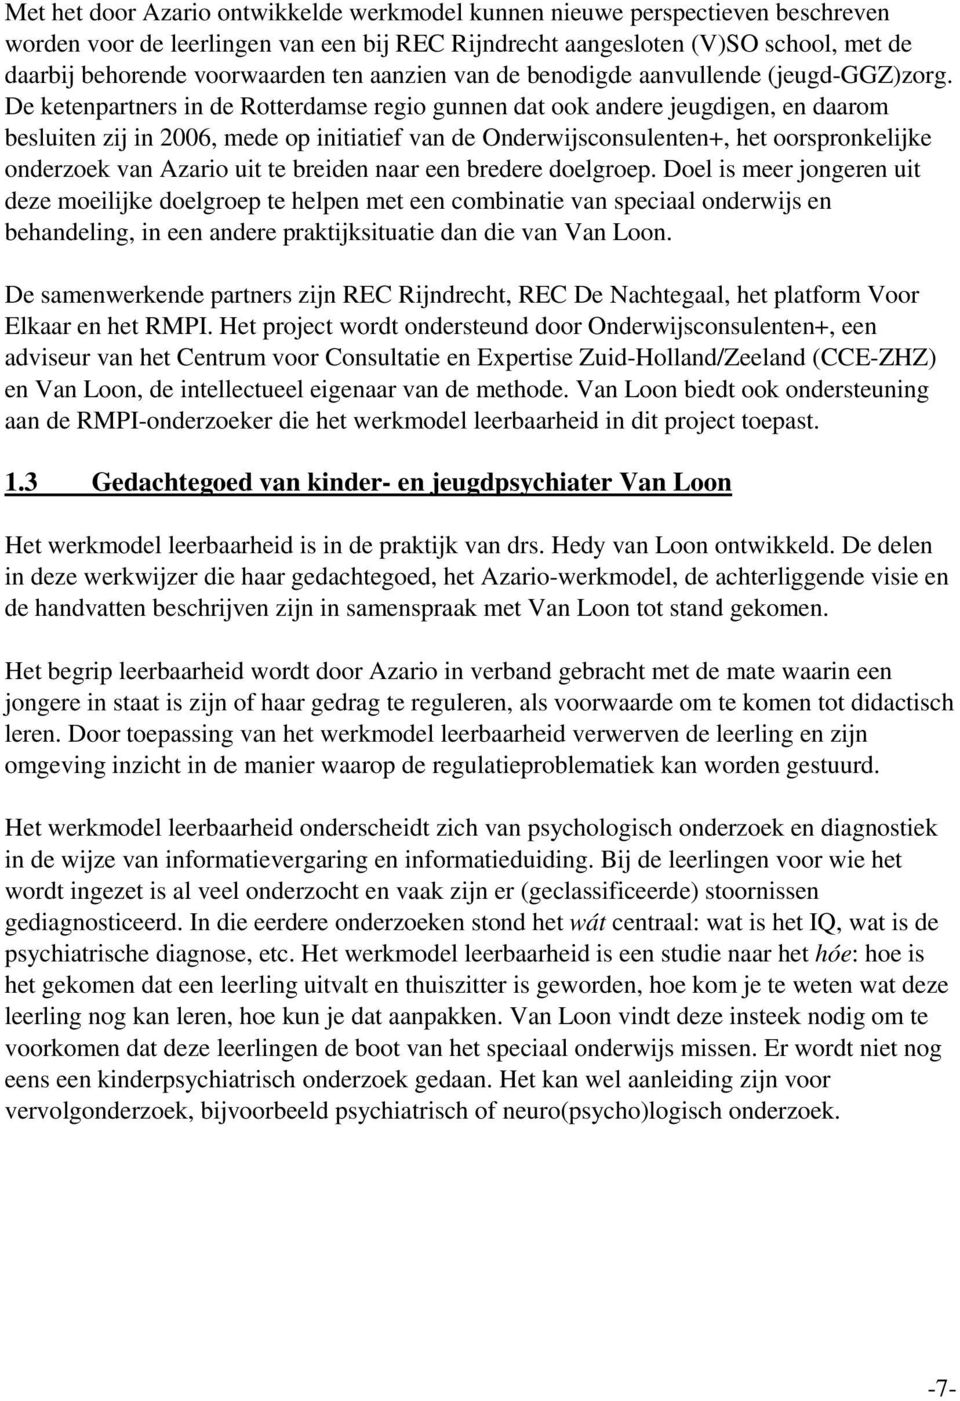 De ketenpartners in de Rotterdamse regio gunnen dat ook andere jeugdigen, en daarom besluiten zij in 2006, mede op initiatief van de Onderwijsconsulenten+, het oorspronkelijke onderzoek van Azario